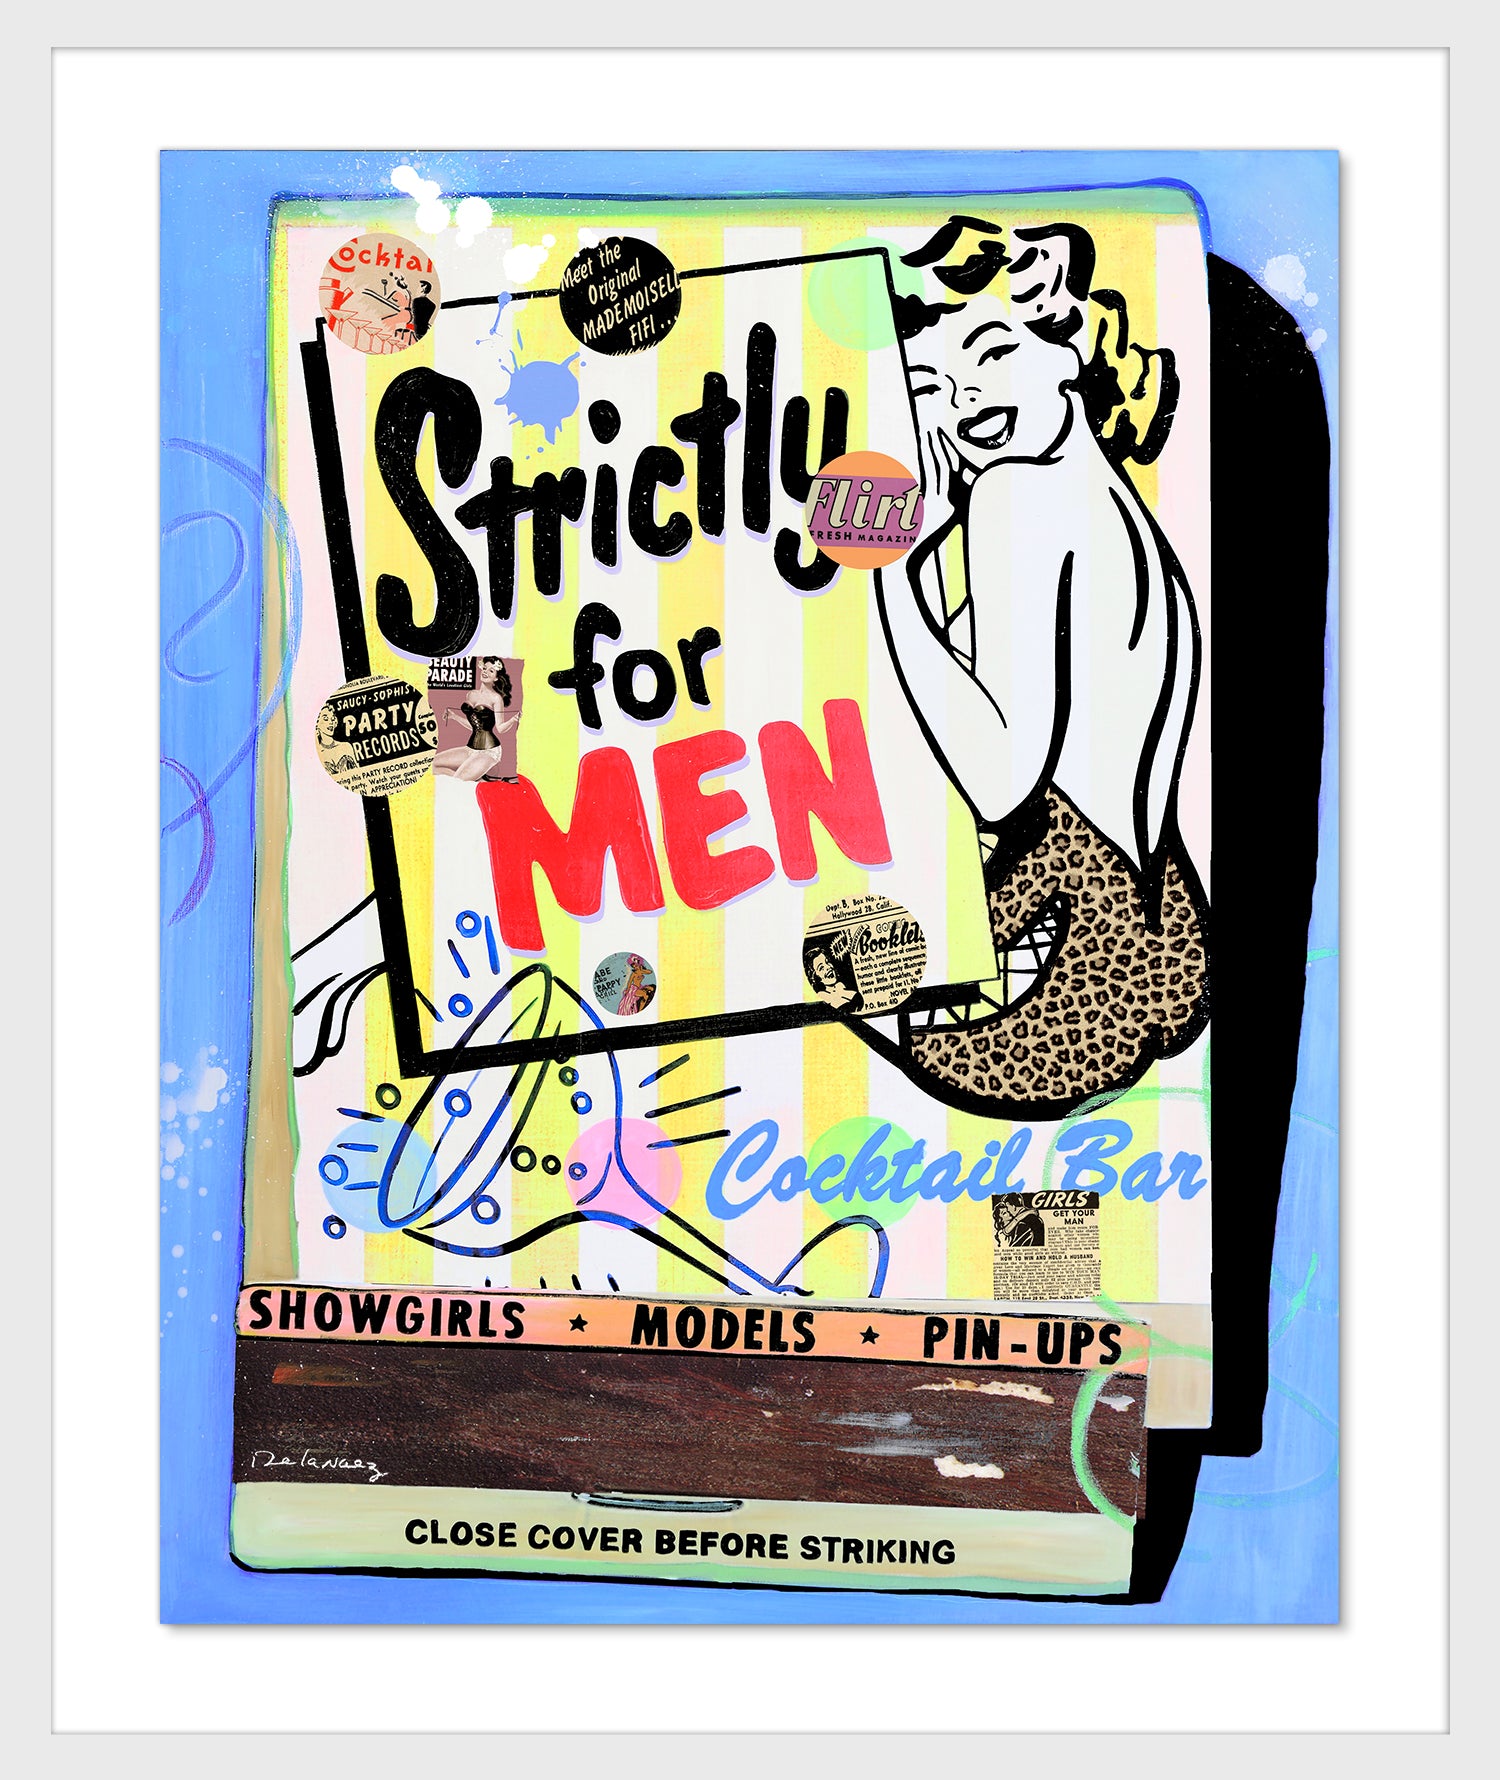 Strictly for Men Mixed Media Sketch - FRAMED, Signed